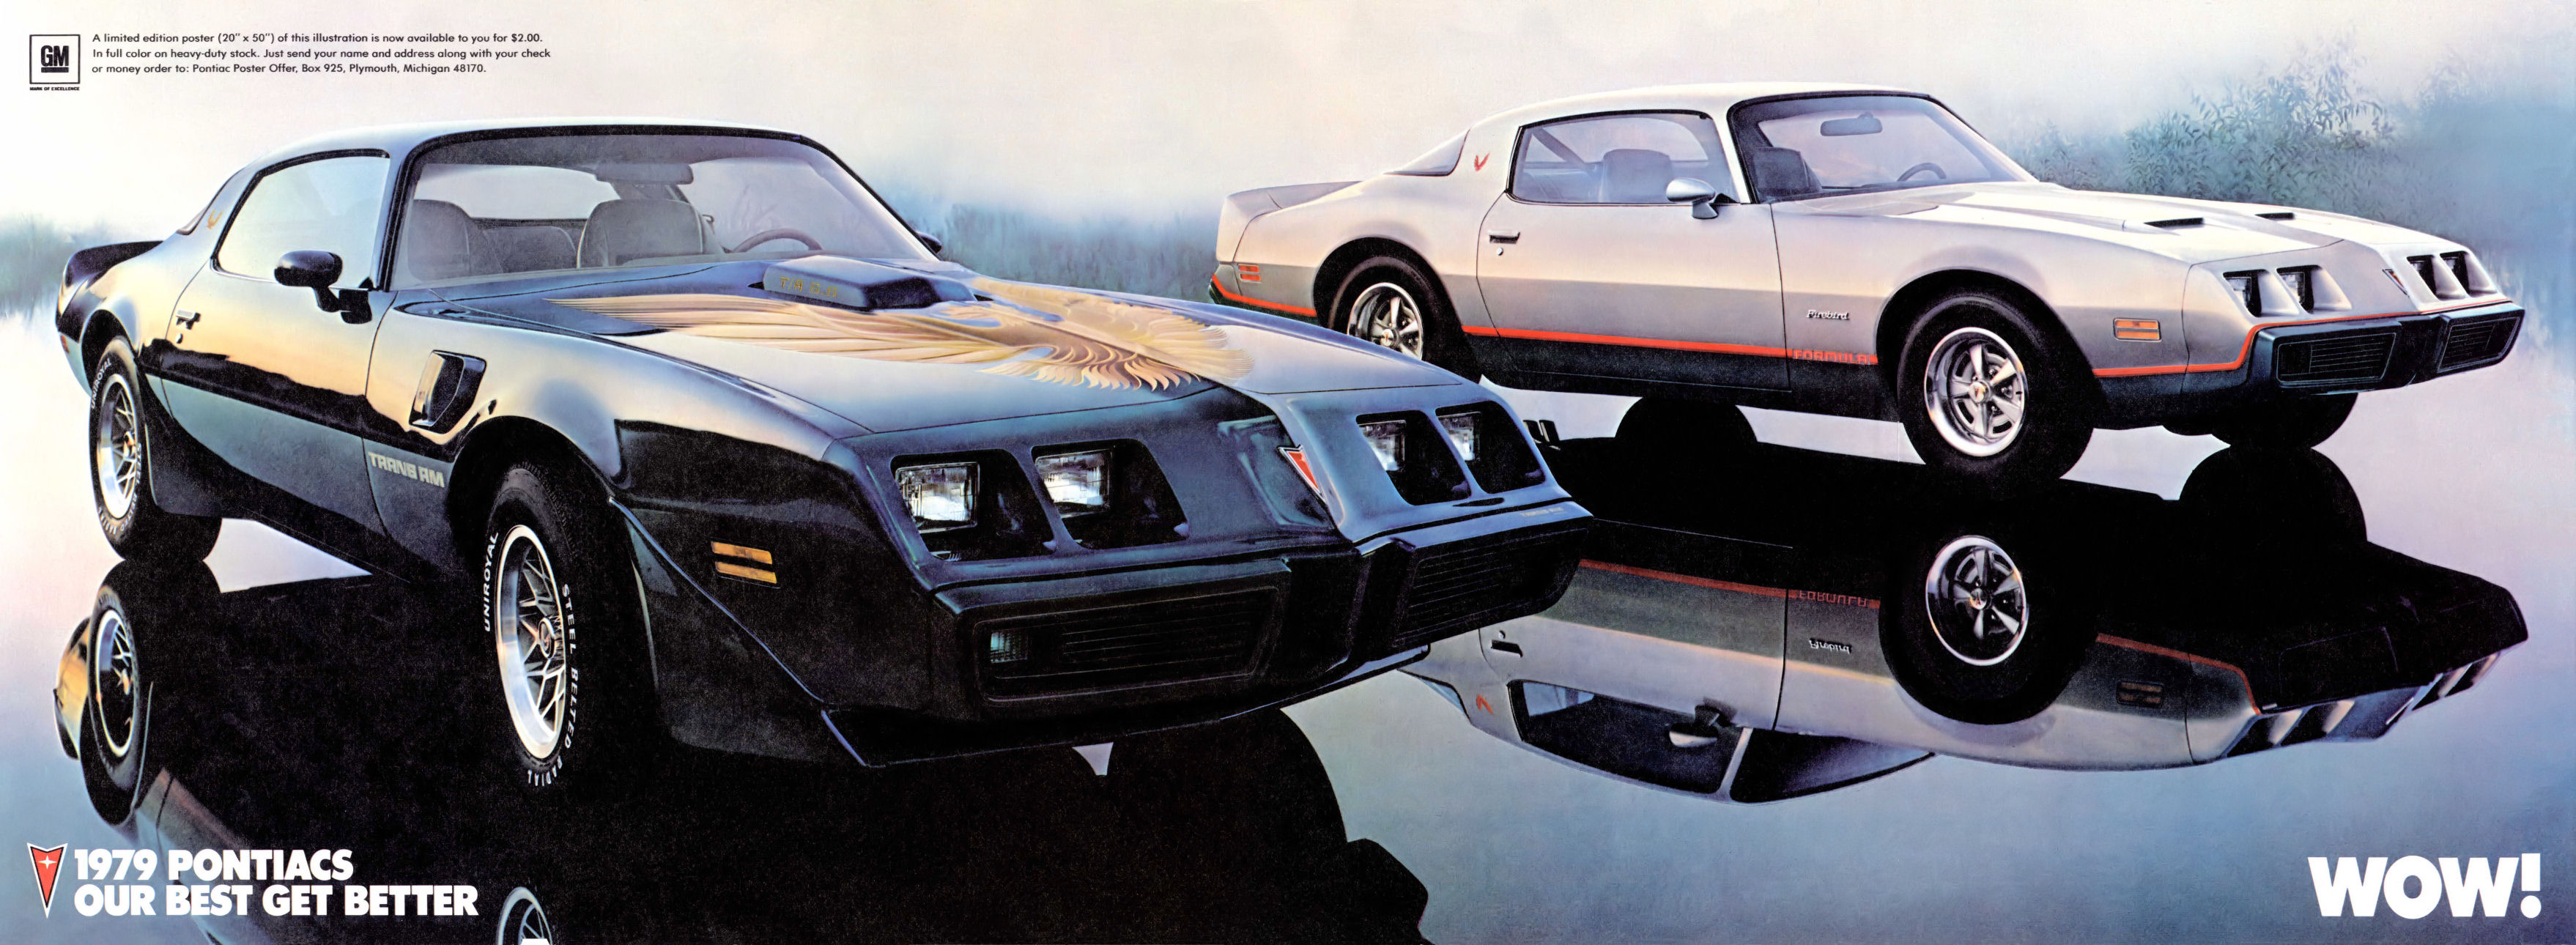 1979_Pontiac_Firebird_Folder-02